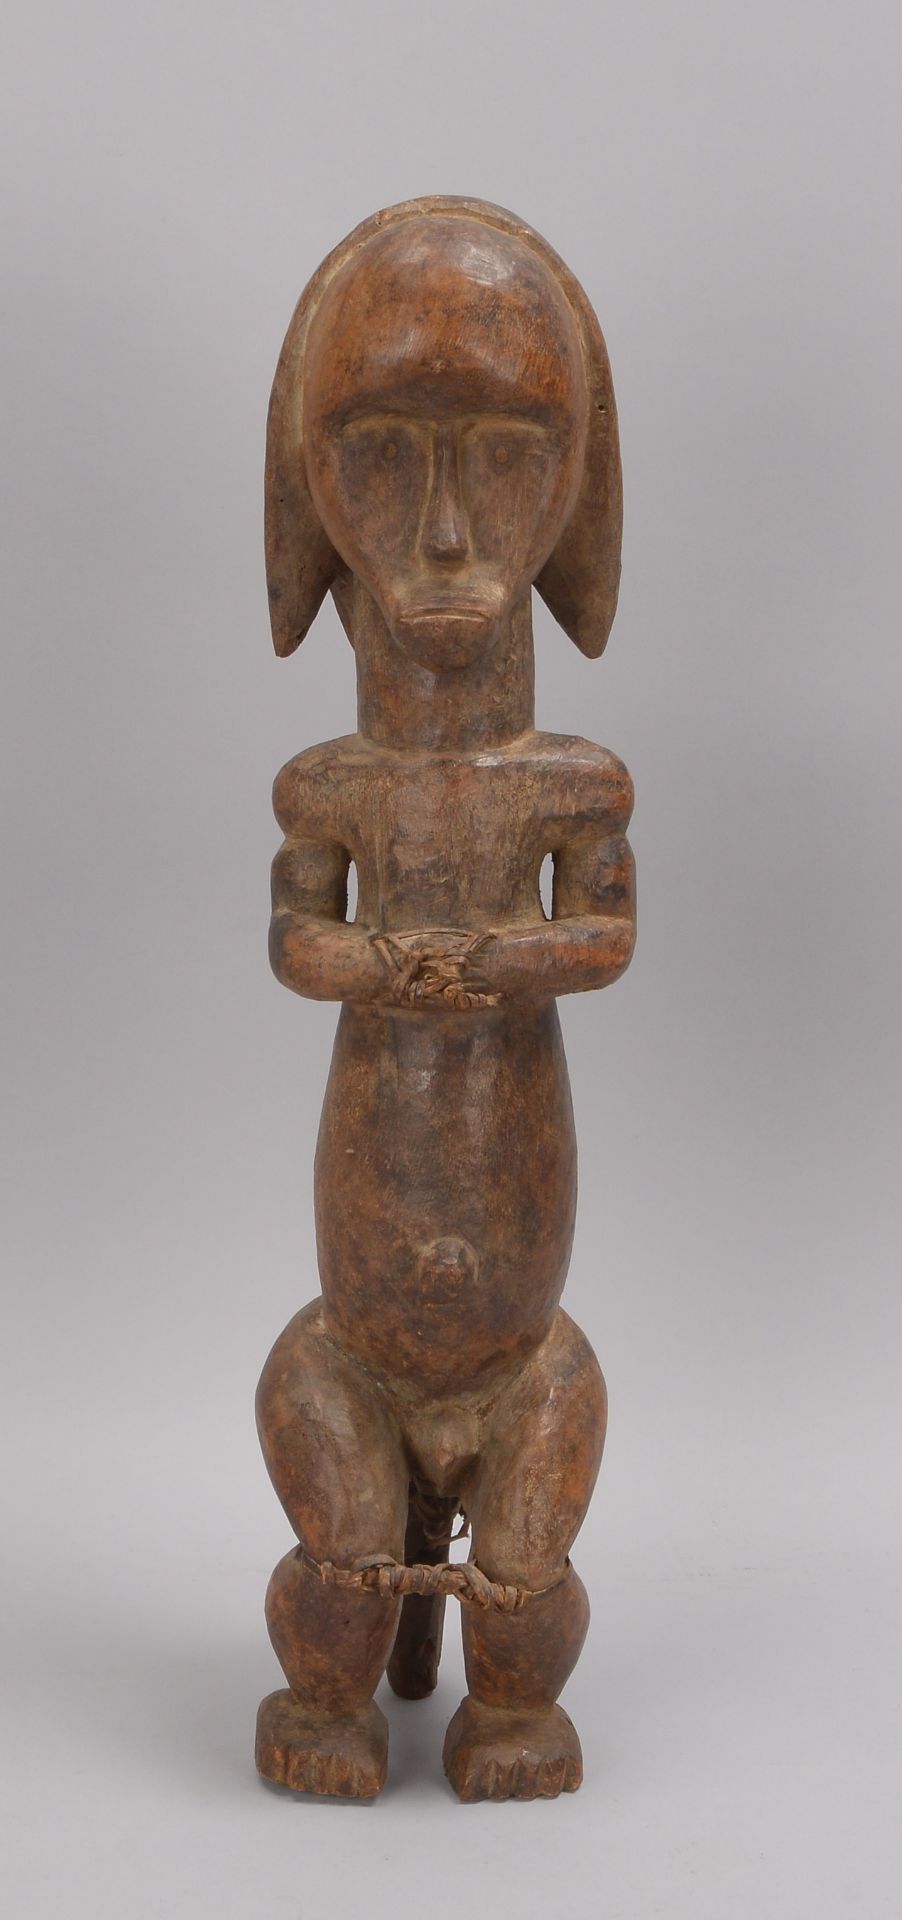 Holzfigur (wohl Benin/Afrika), 'Gefesselter' (in siitzender Haltung dargestellt), handgeschnitzt